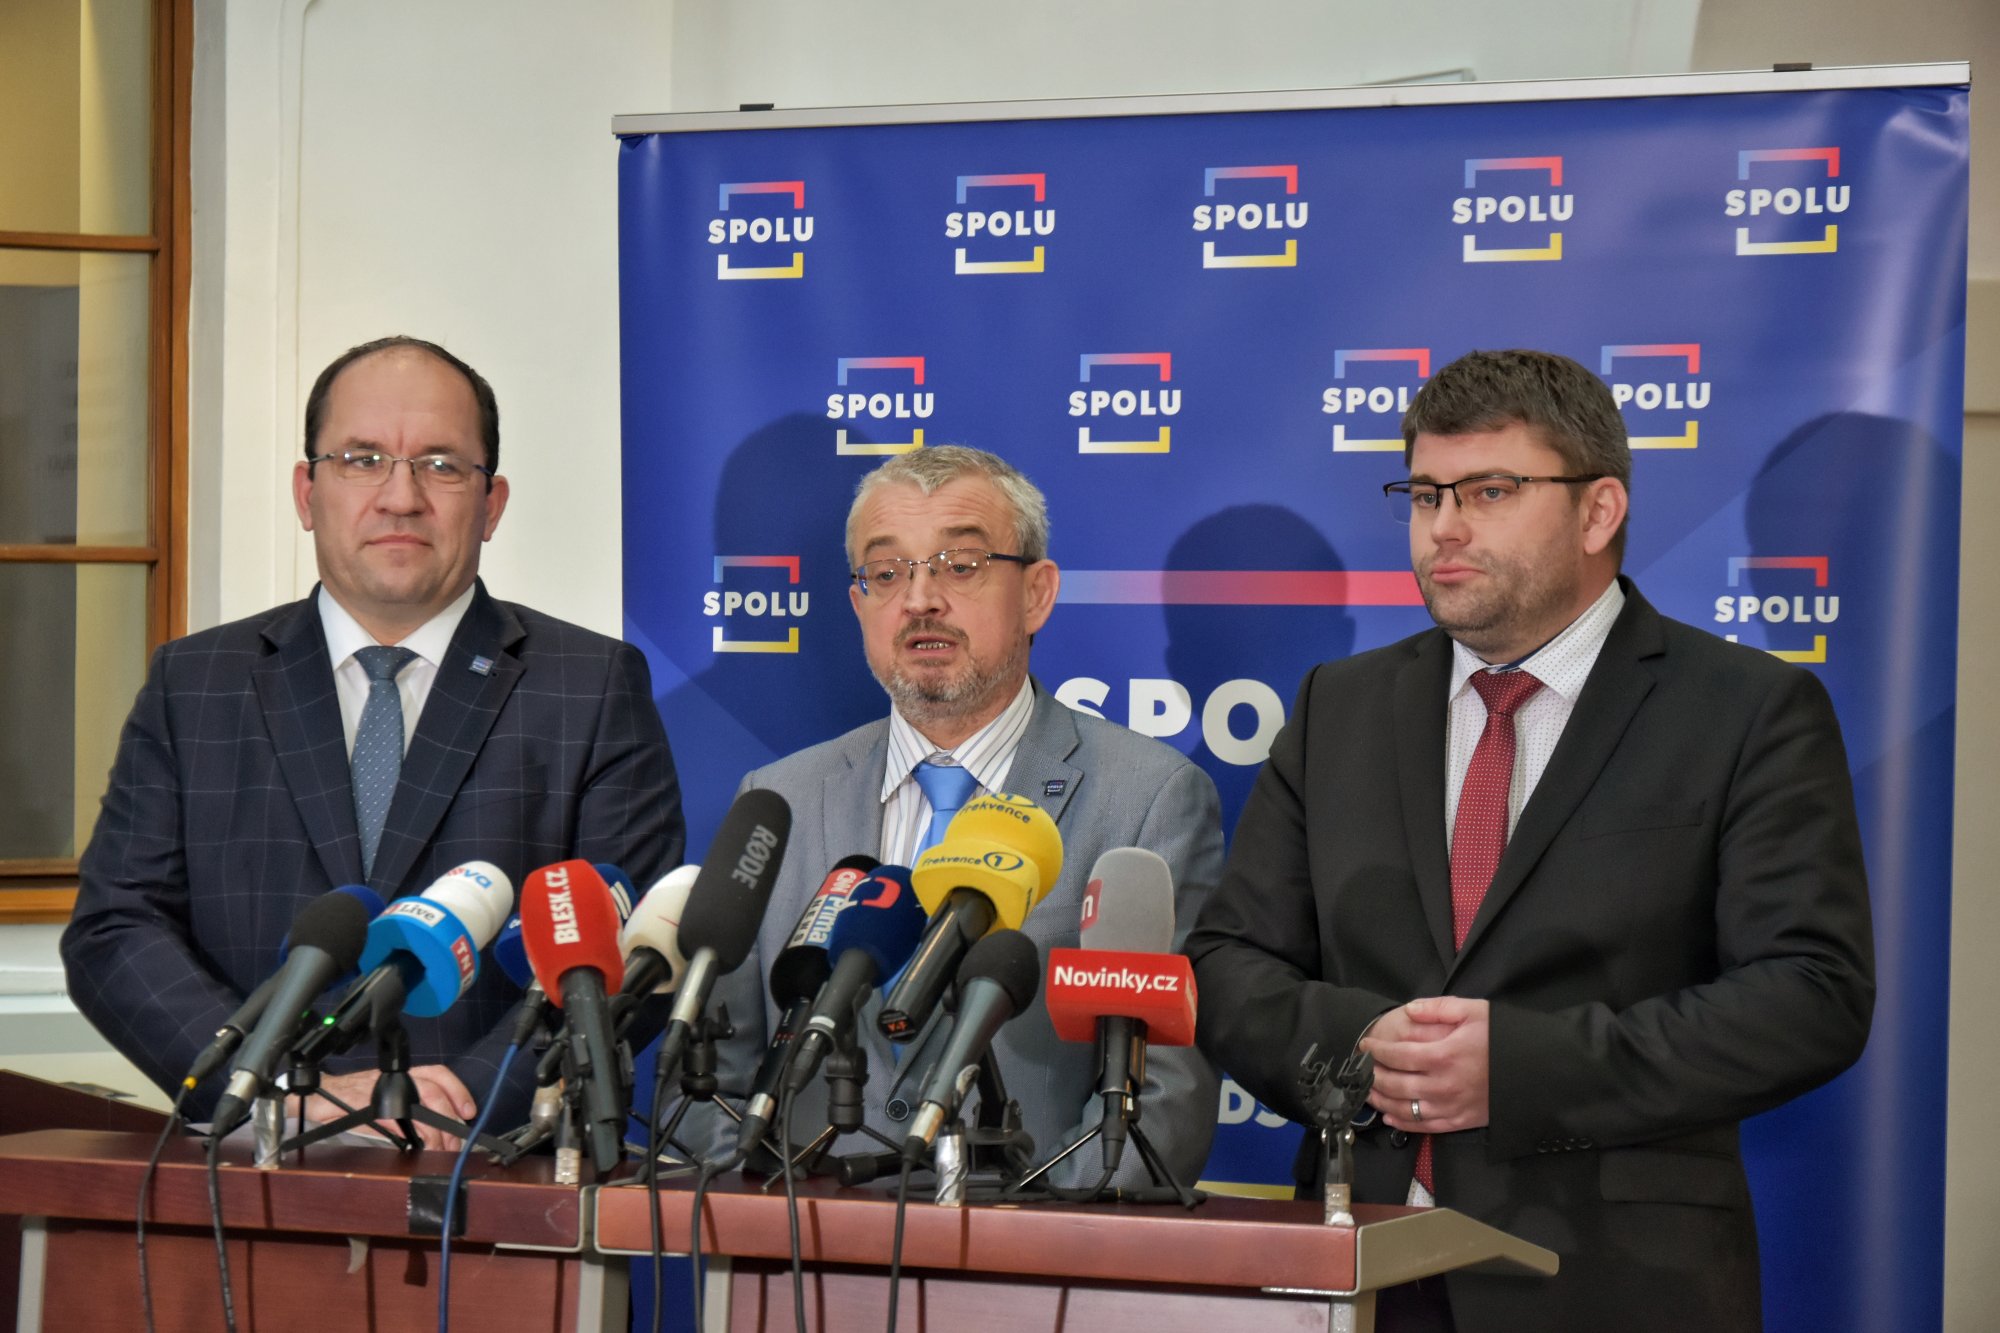 SPOLU: Koaliční poslanci se chystají přehlasovat prezidentovo veto letošního rozpočtu, budou se věnovat i zastropování